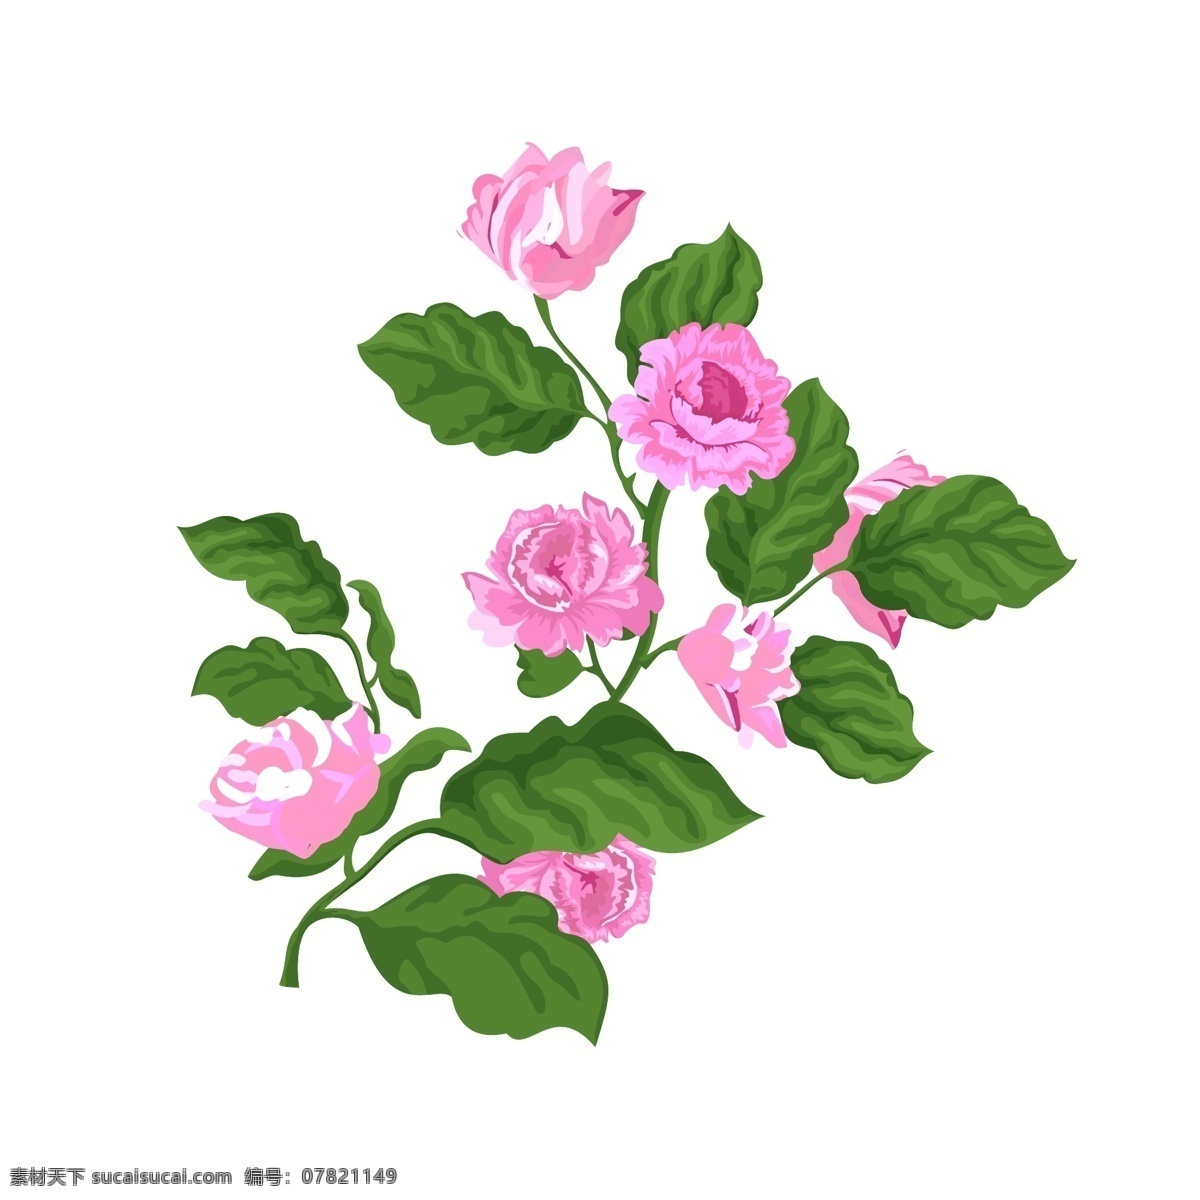 手绘 水彩 情人节 粉红色 玫瑰花 花卉 植物 叶子 手绘风